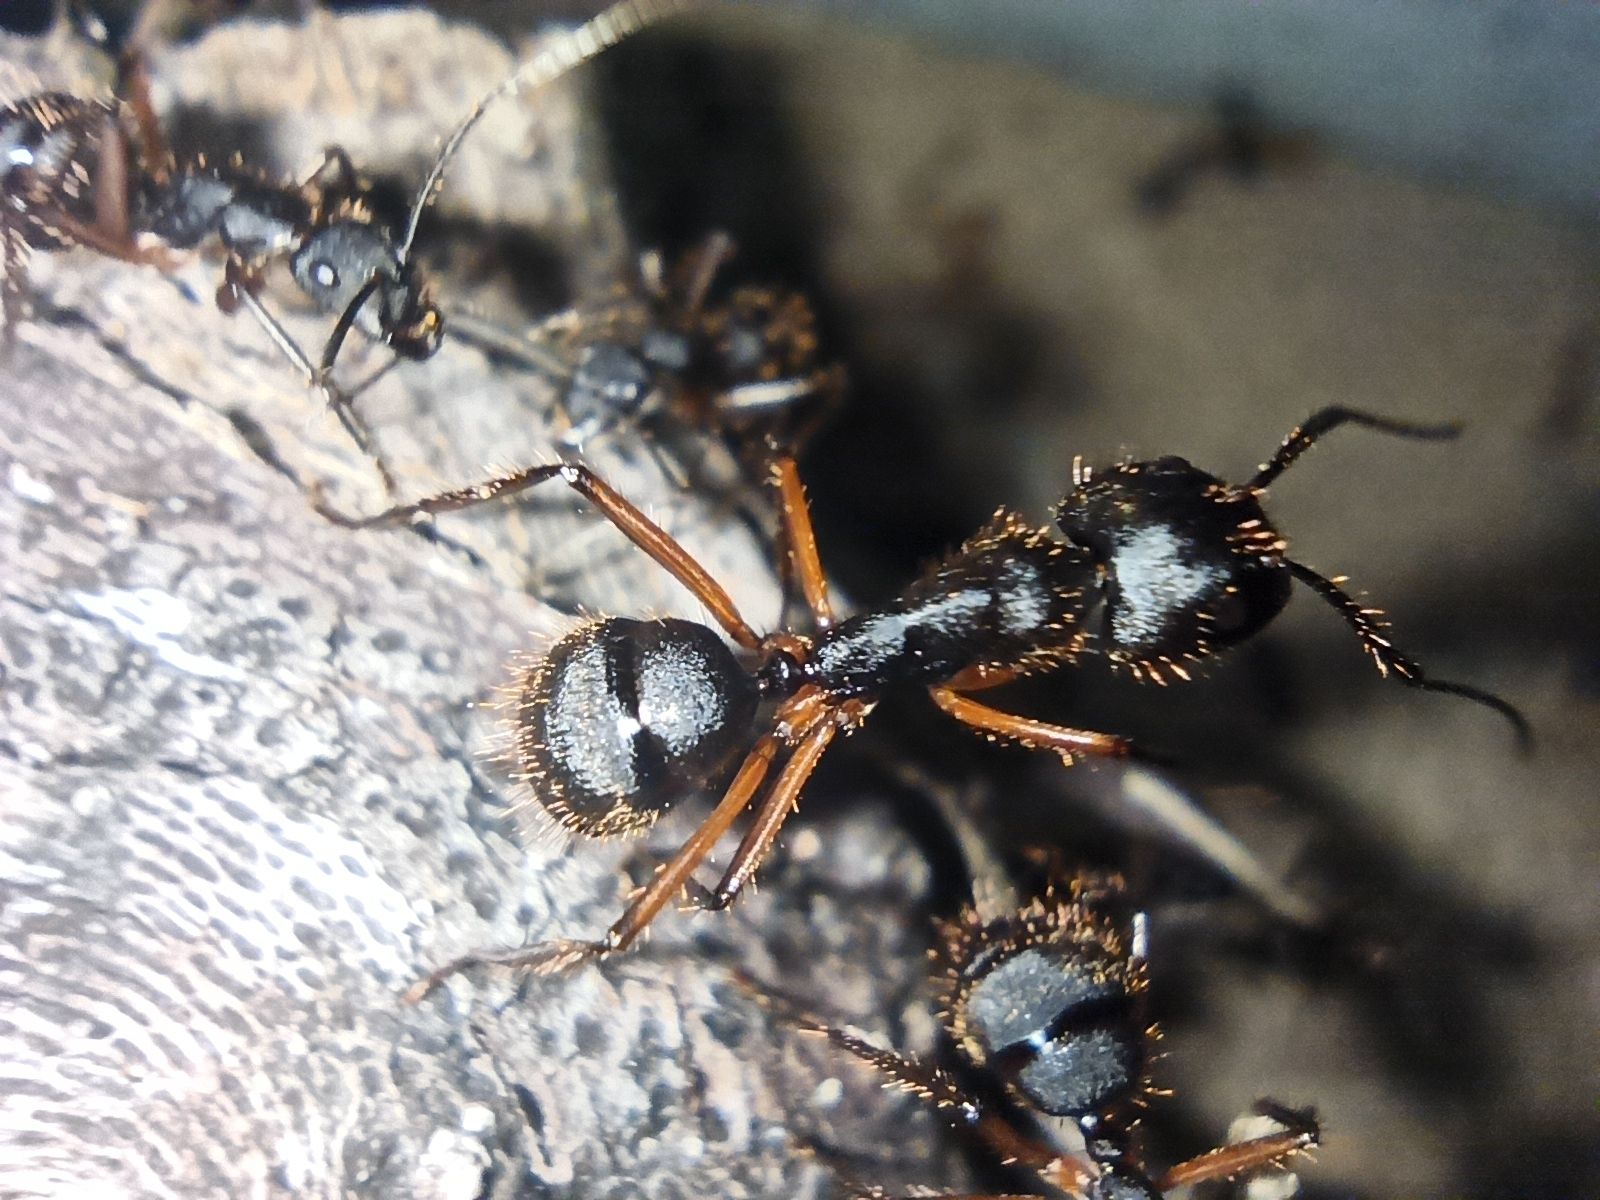 Camponotus brasiliensis worker in formicarium